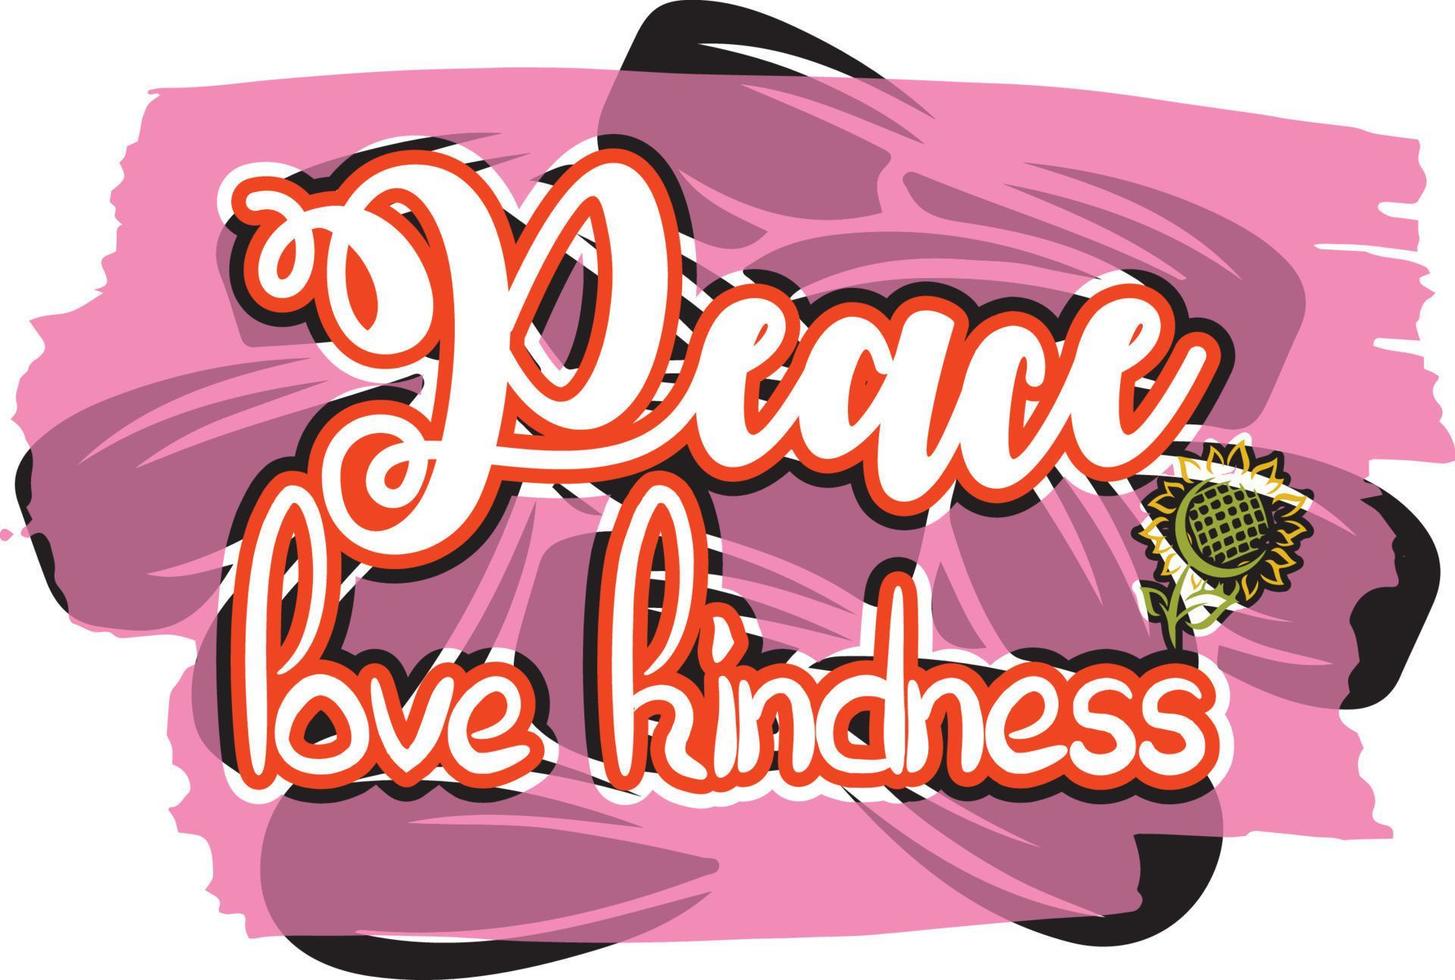 fred kärlek vänlighet vektor